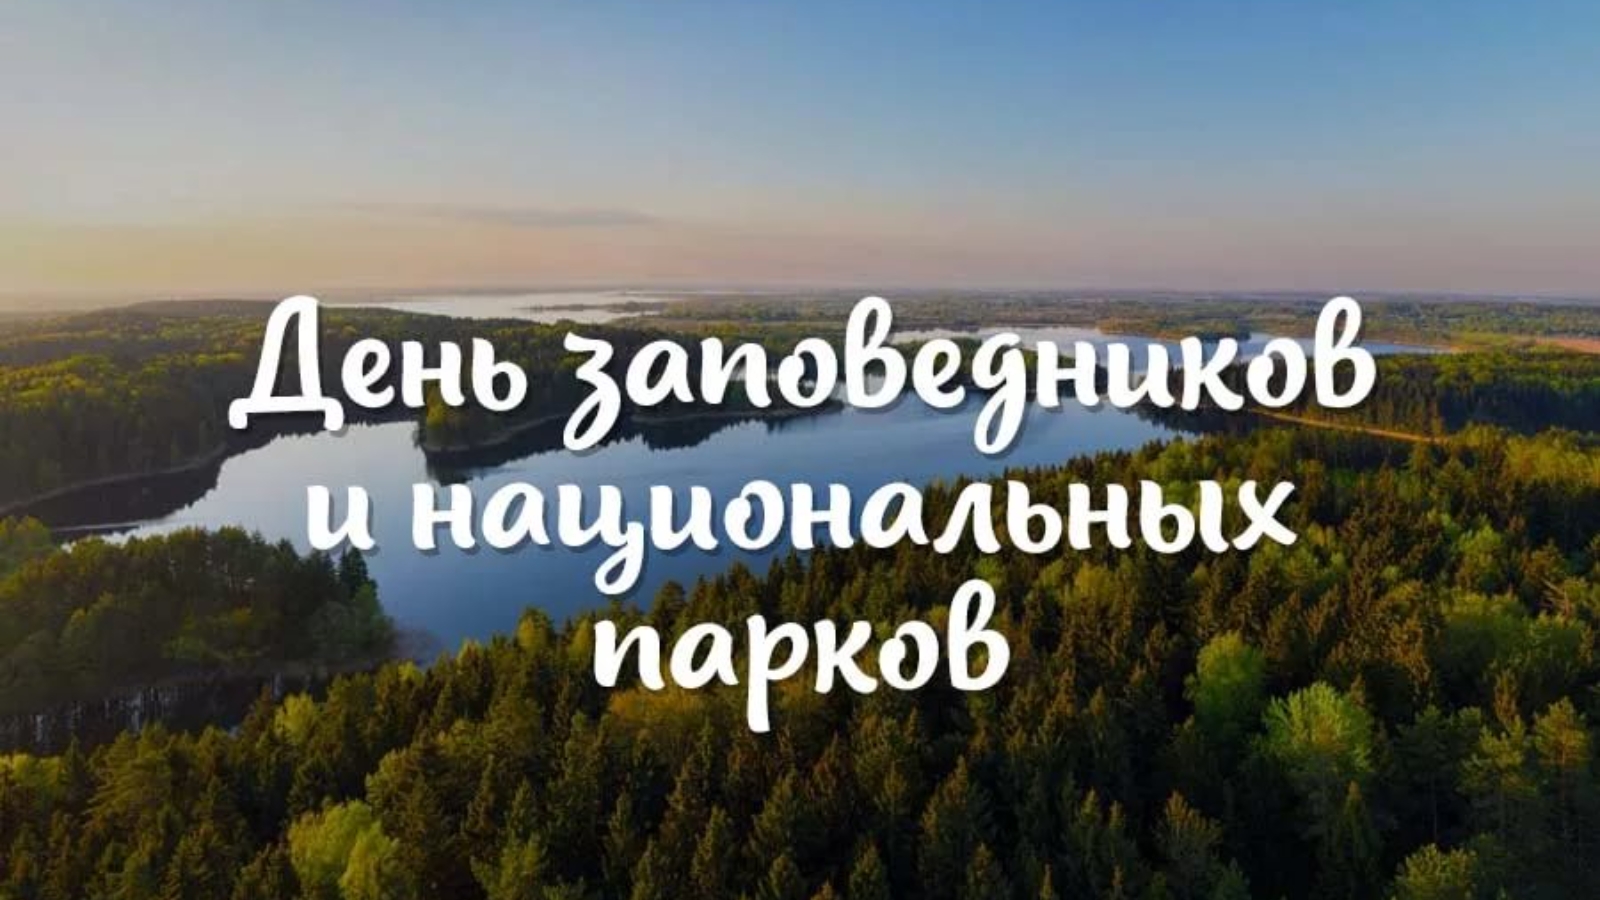 11 Января в России отмечается день заповедников и национальных парков.